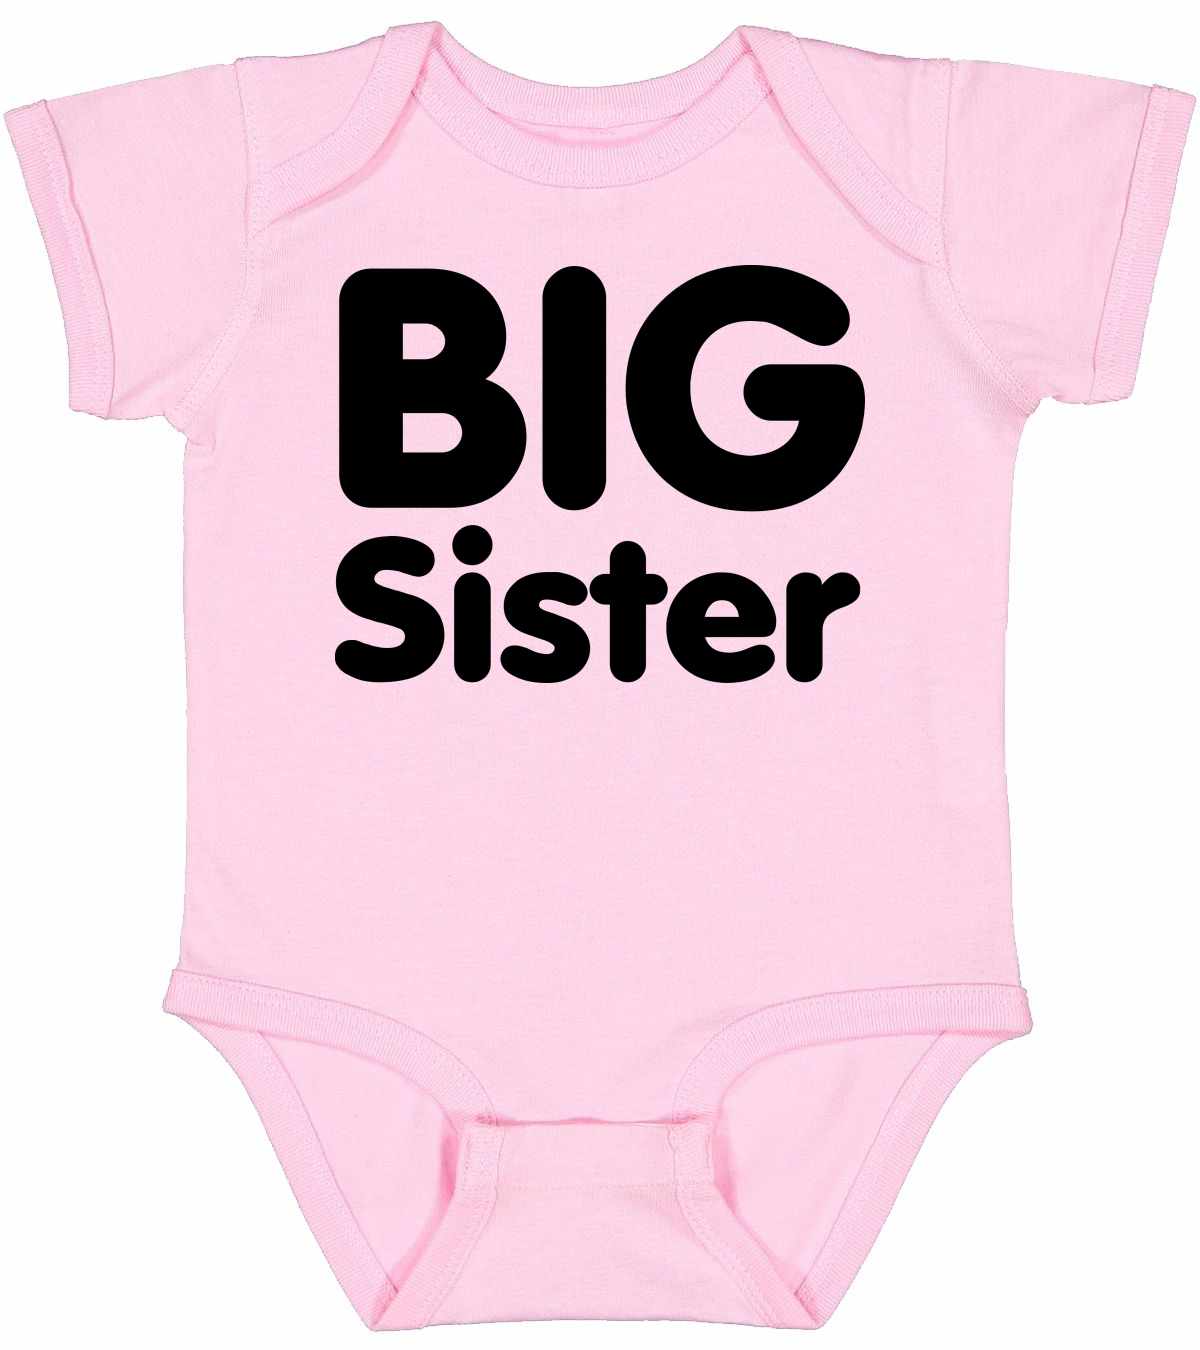 BIG SISTER on Infant BodySuit